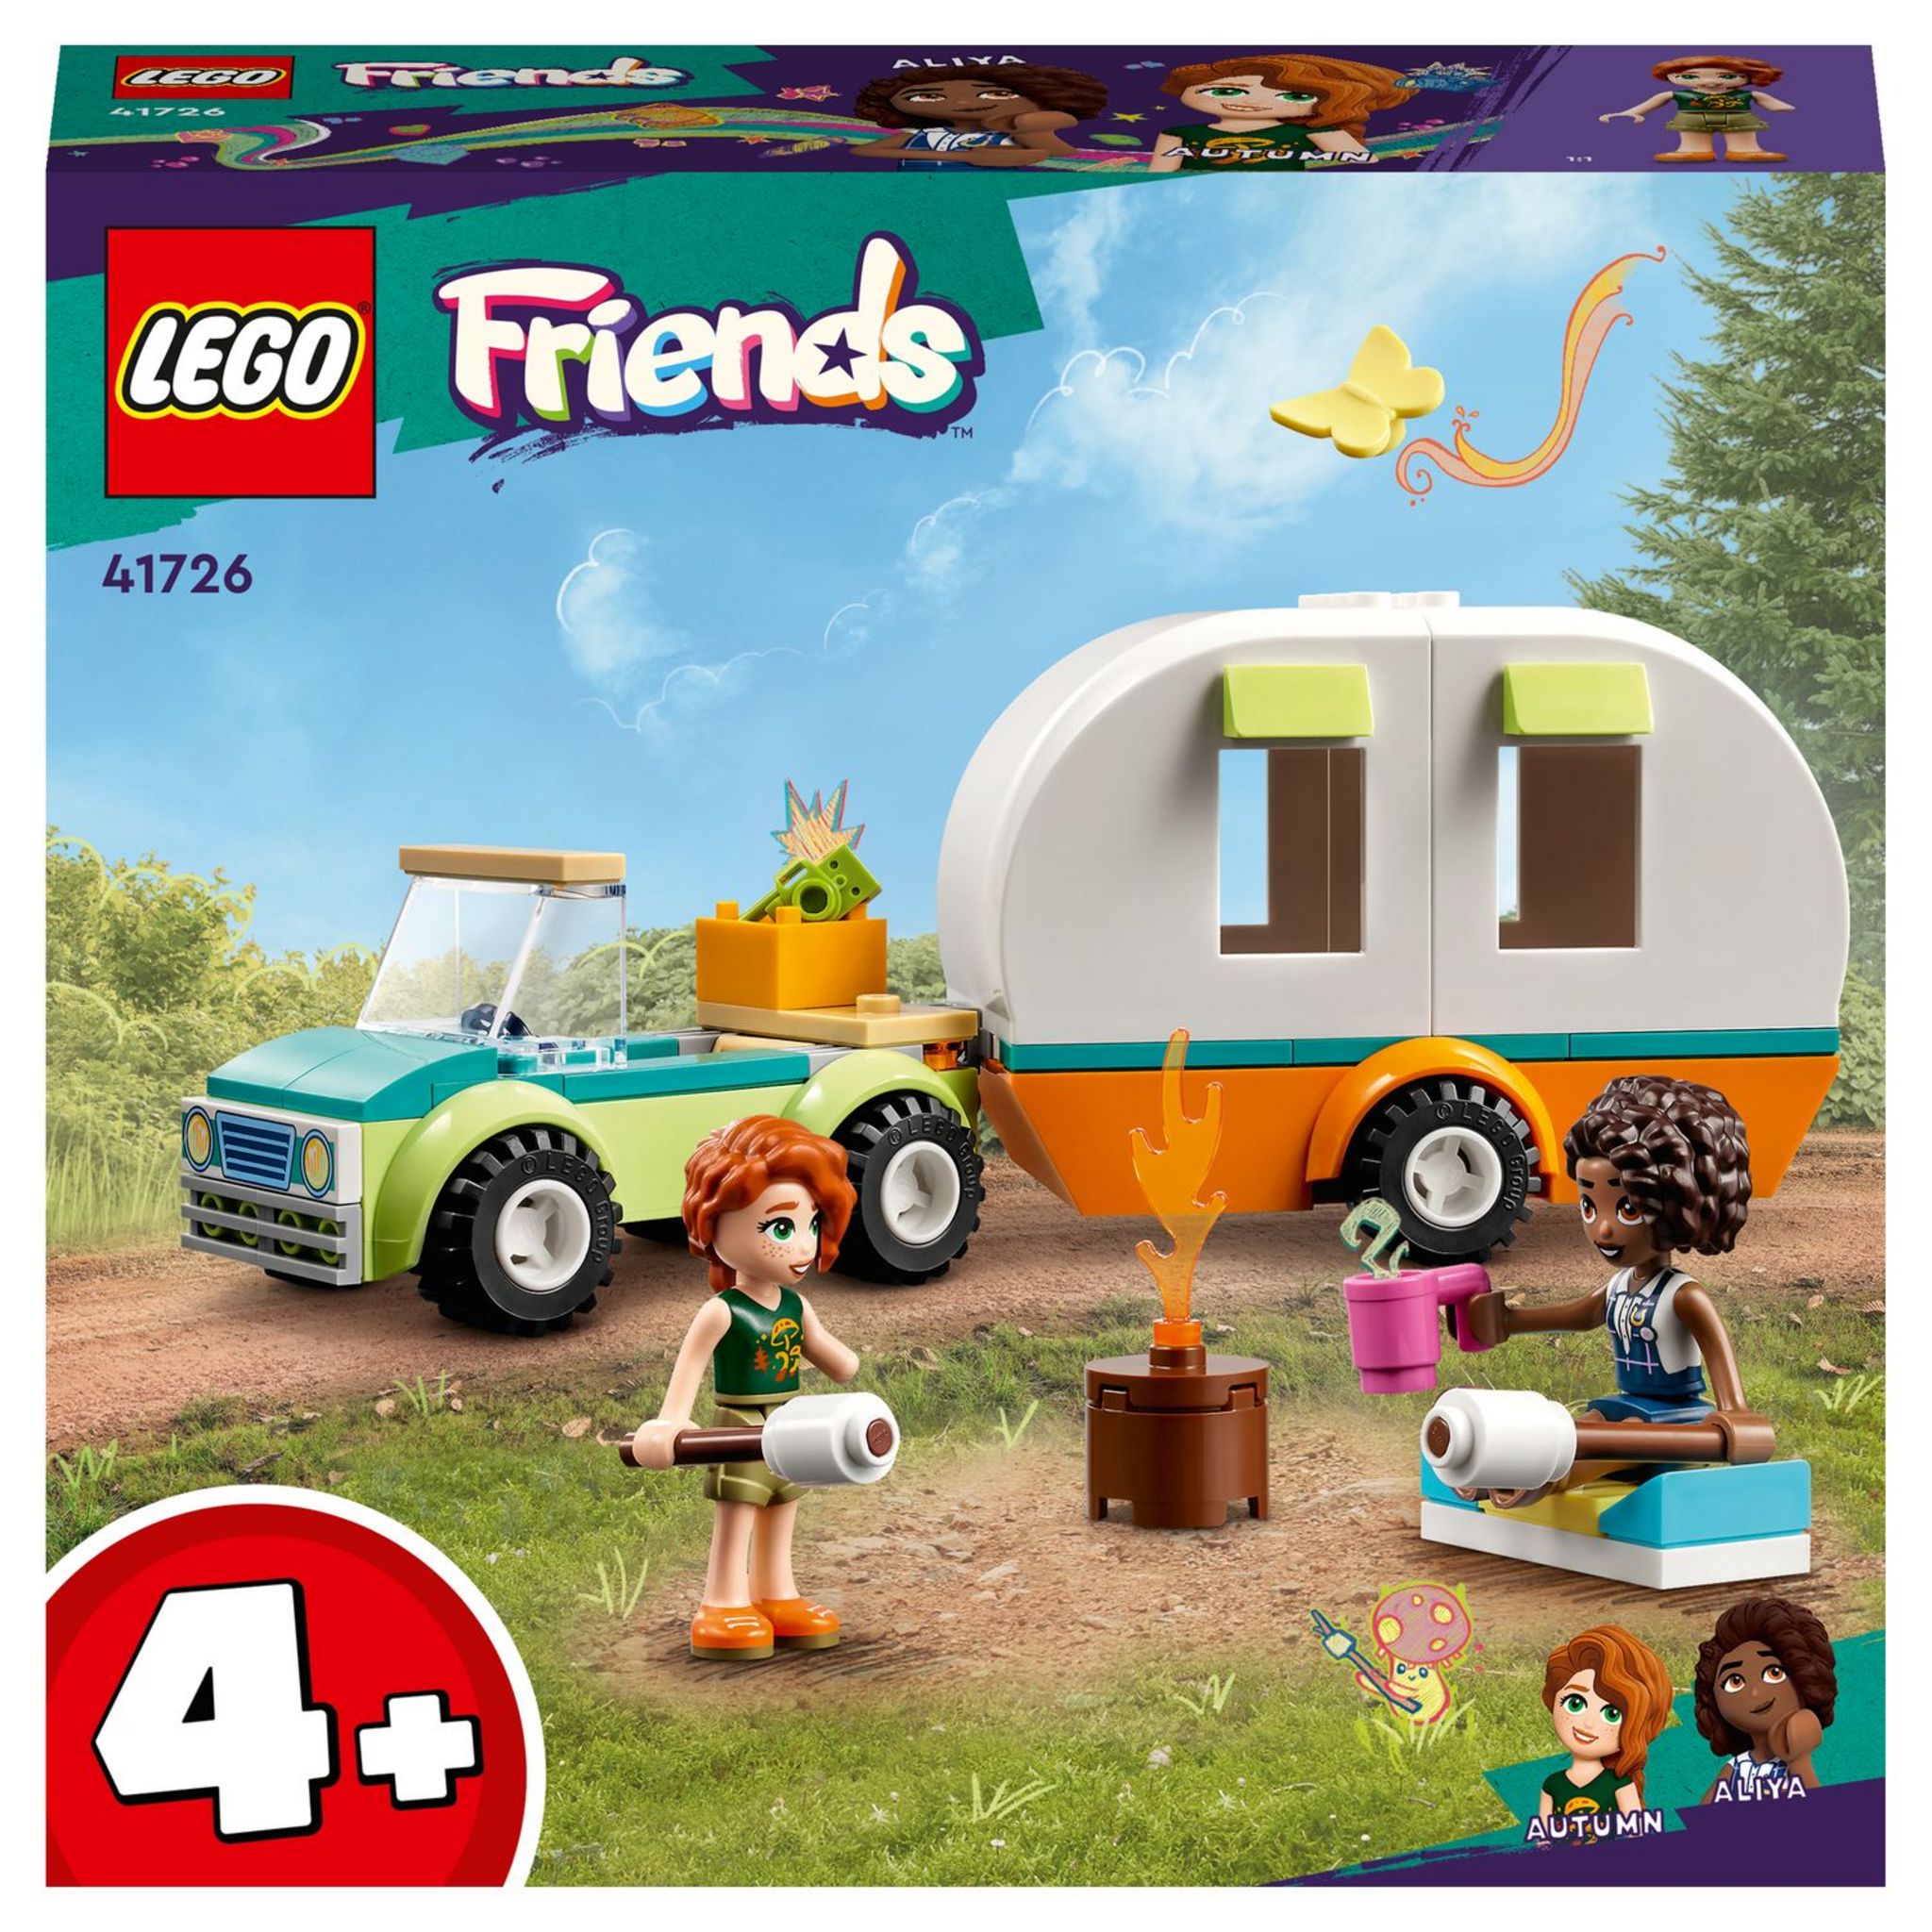 Acheter LEGO Friends 42634 La remorque pour chevaux et poneys en ligne?